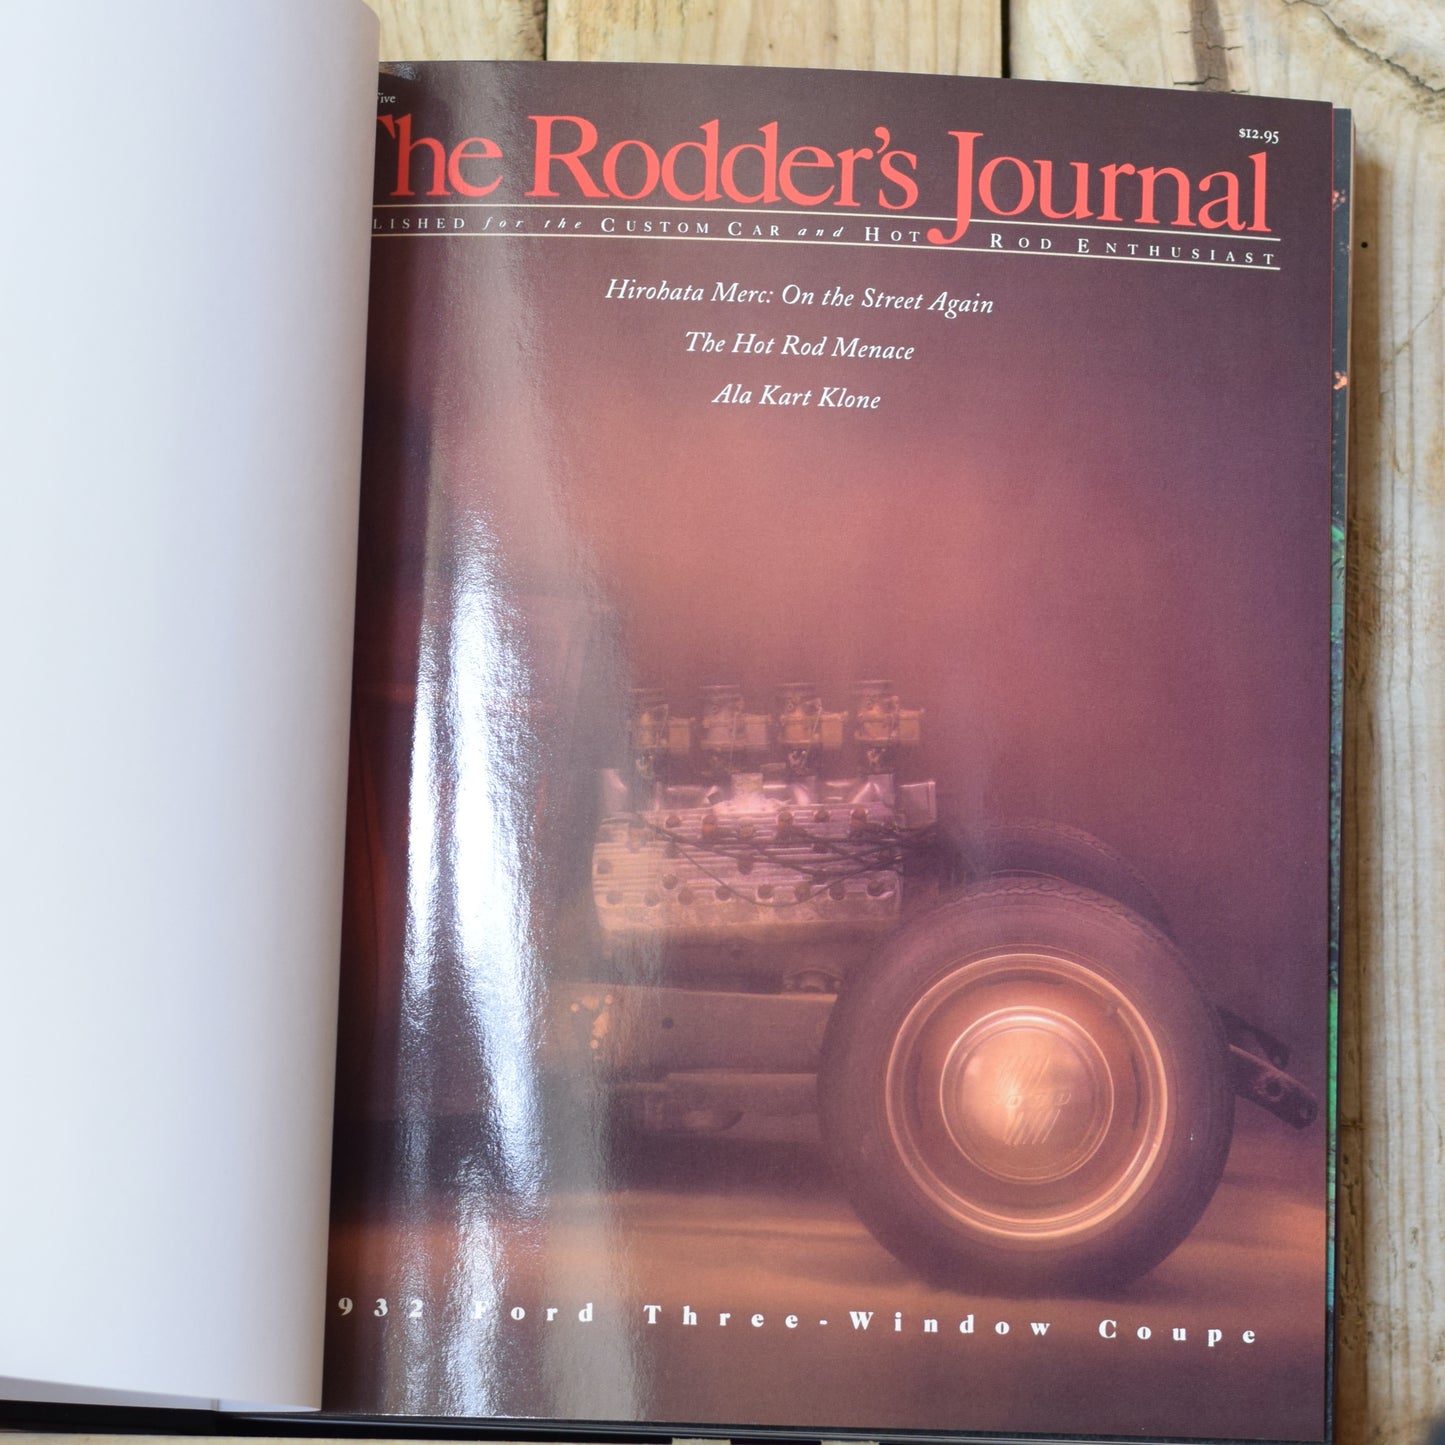 Vintage Non-Fiction Hardback: Steve Coonan - The Rodder's Journal Special Hardbound Edition Vol. 2 SIGNED